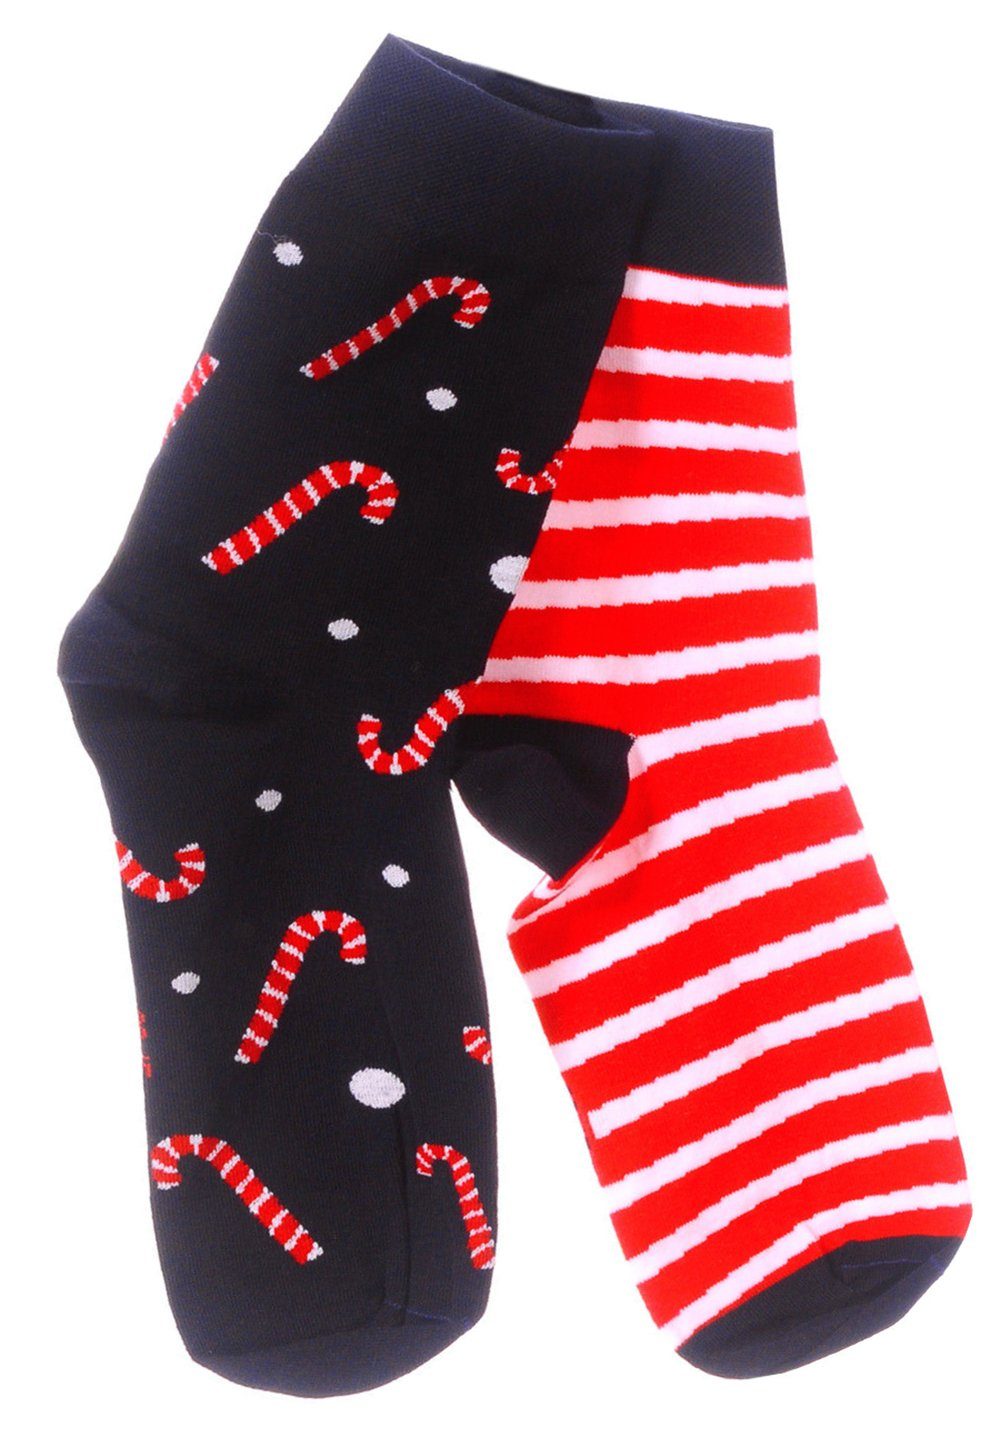 Martinex Socken Freizeitsocken 39 1 43 festlich, 42 35 weihnachtlich, 38 46 für Weihnachtssocken, Paar Familie die ganze Strümpfe Socken